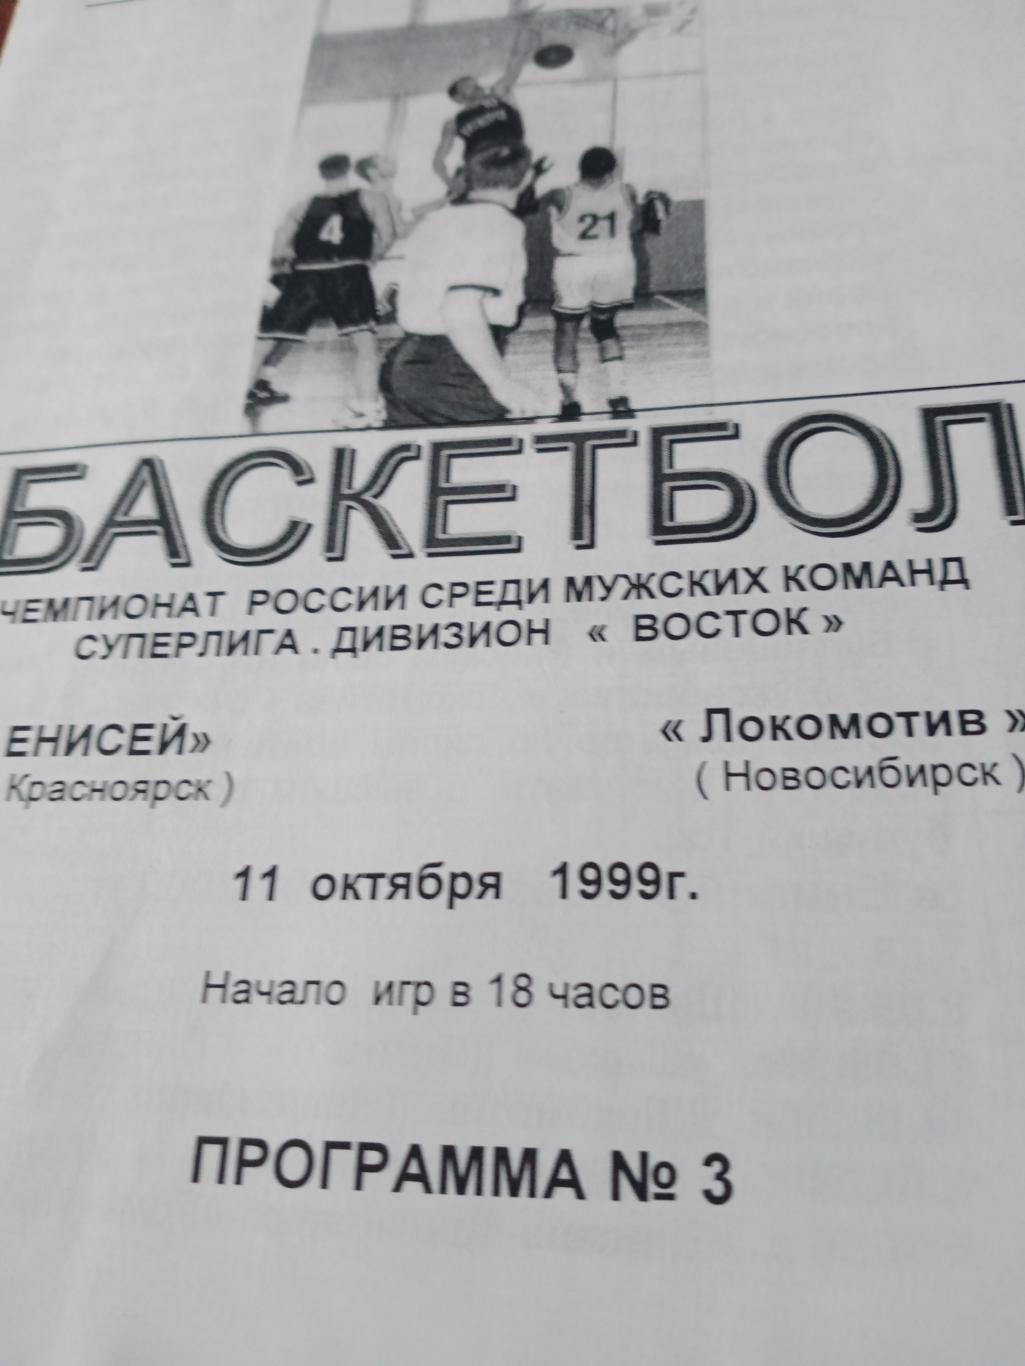 Енисей Красноярск - Локомотив Новосибирск. 11 октября 1999 год